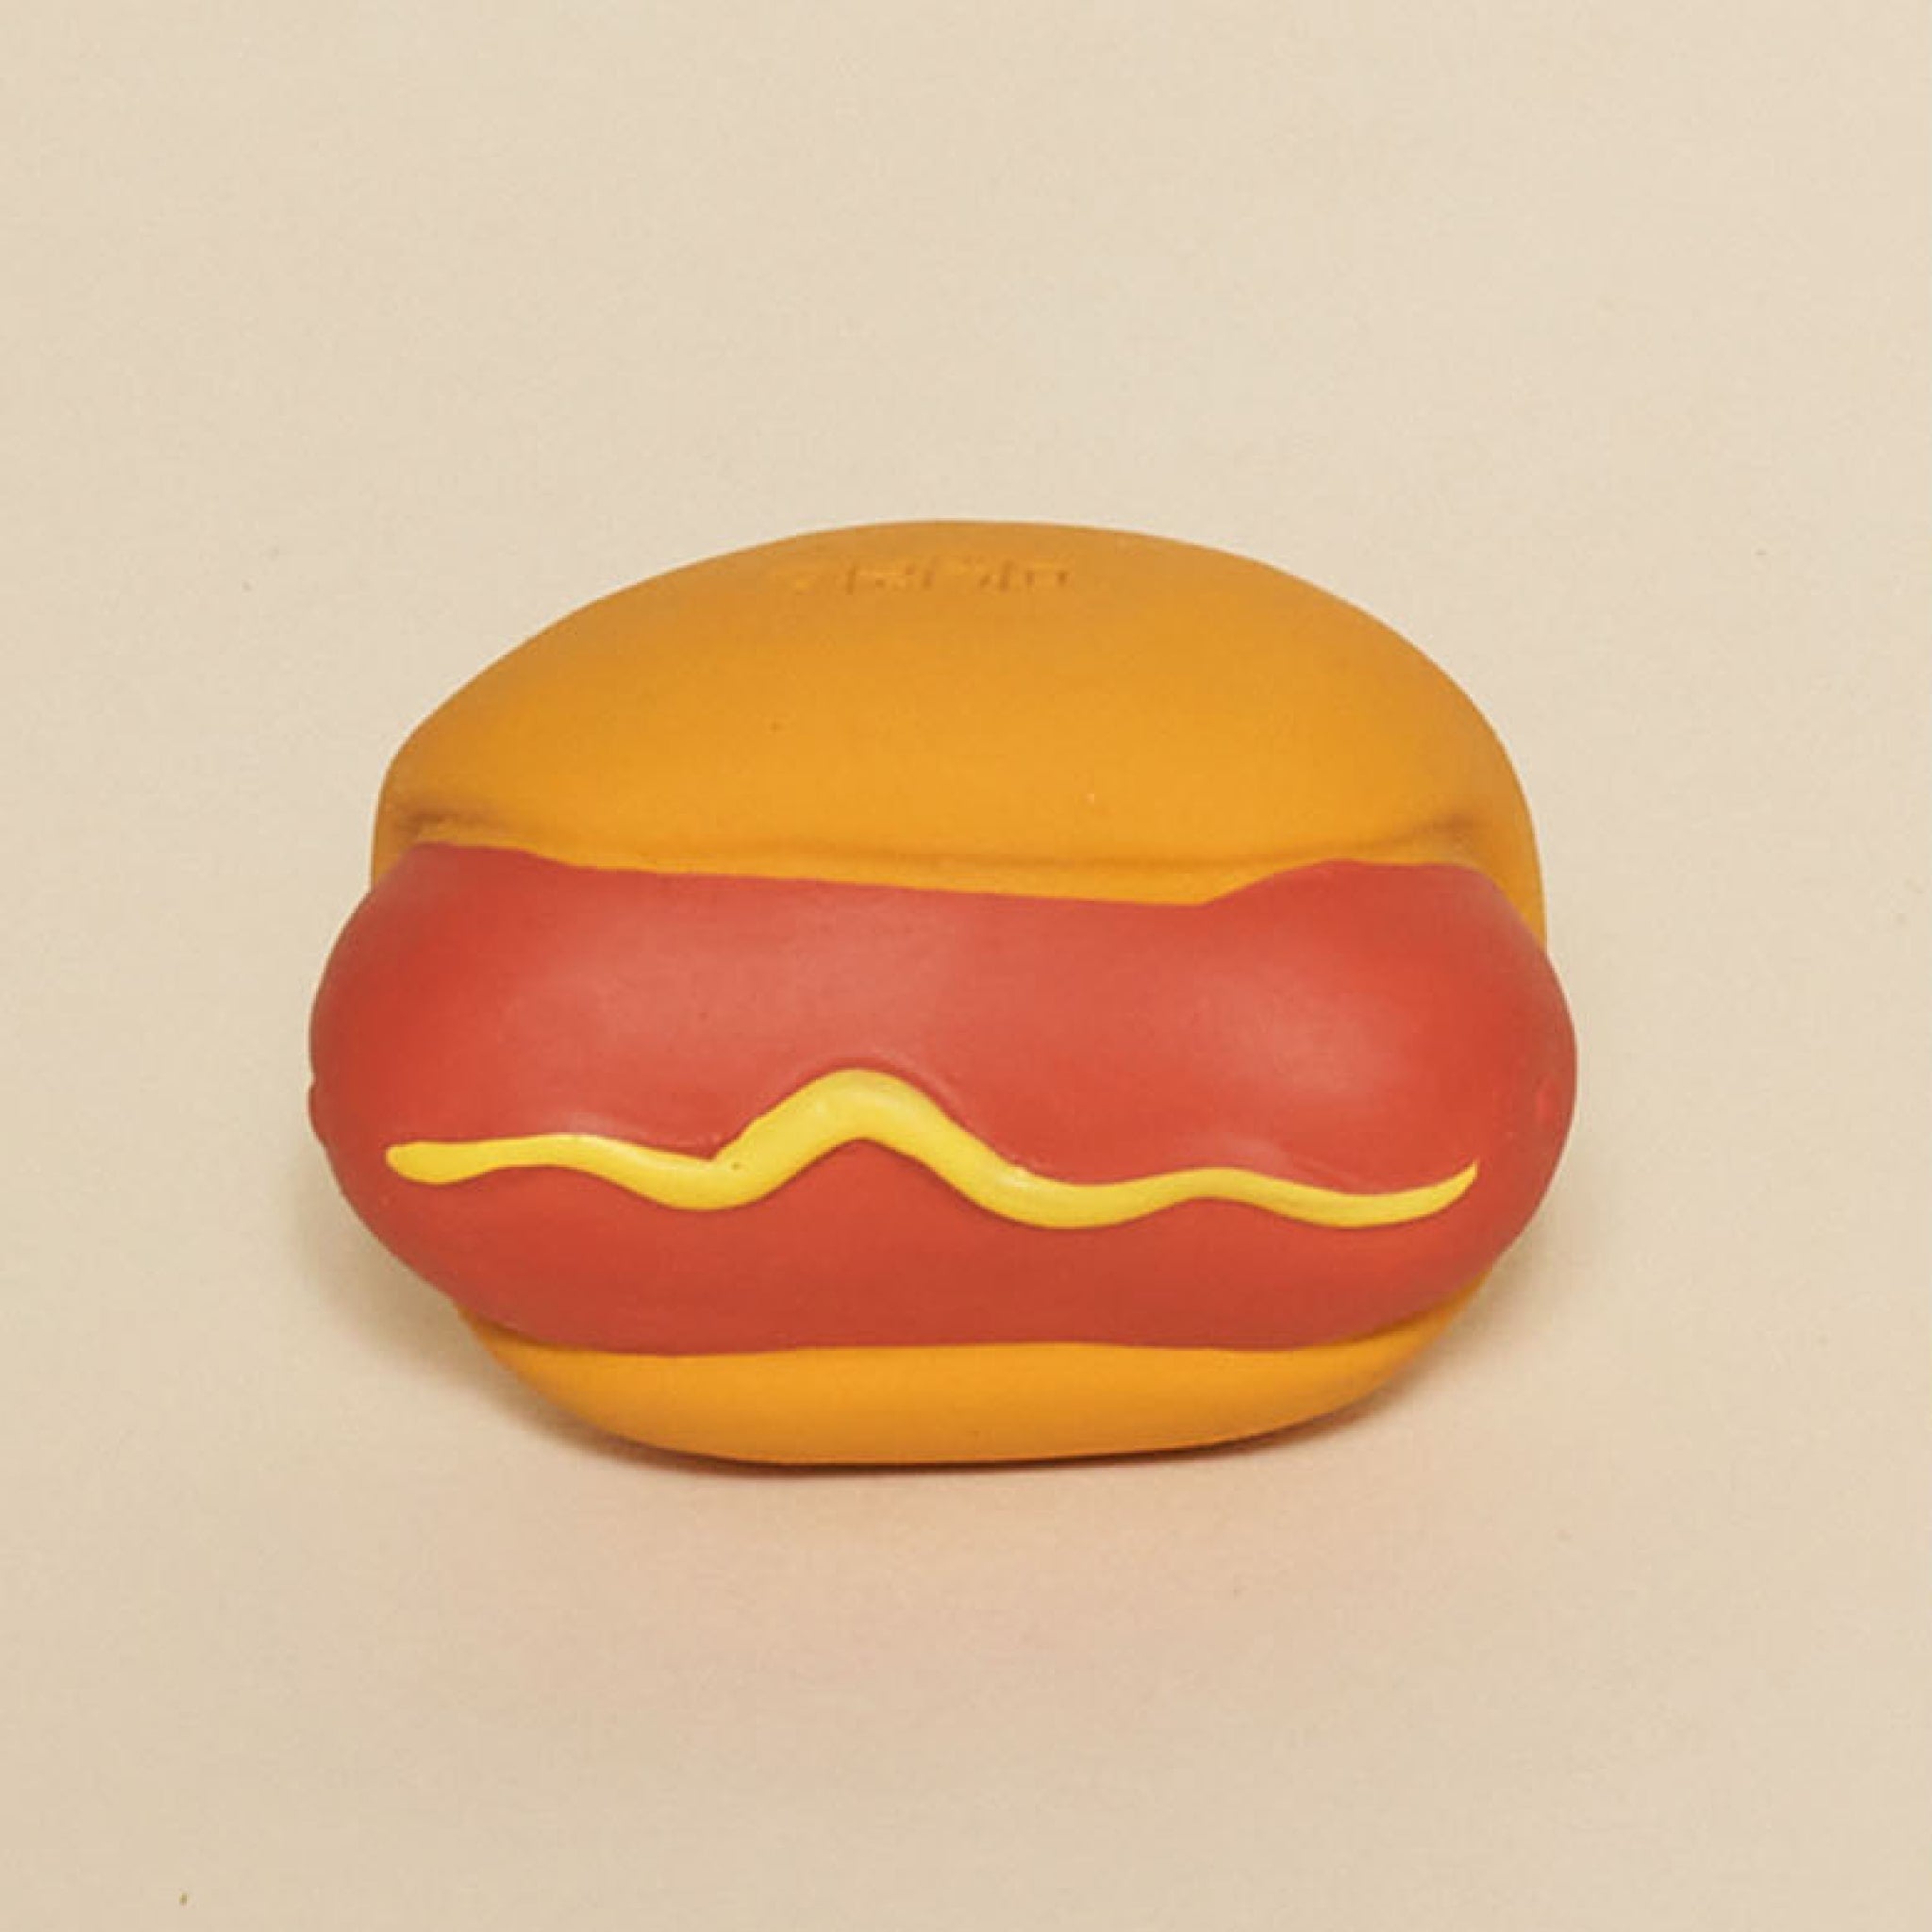 Hot Dog Toy